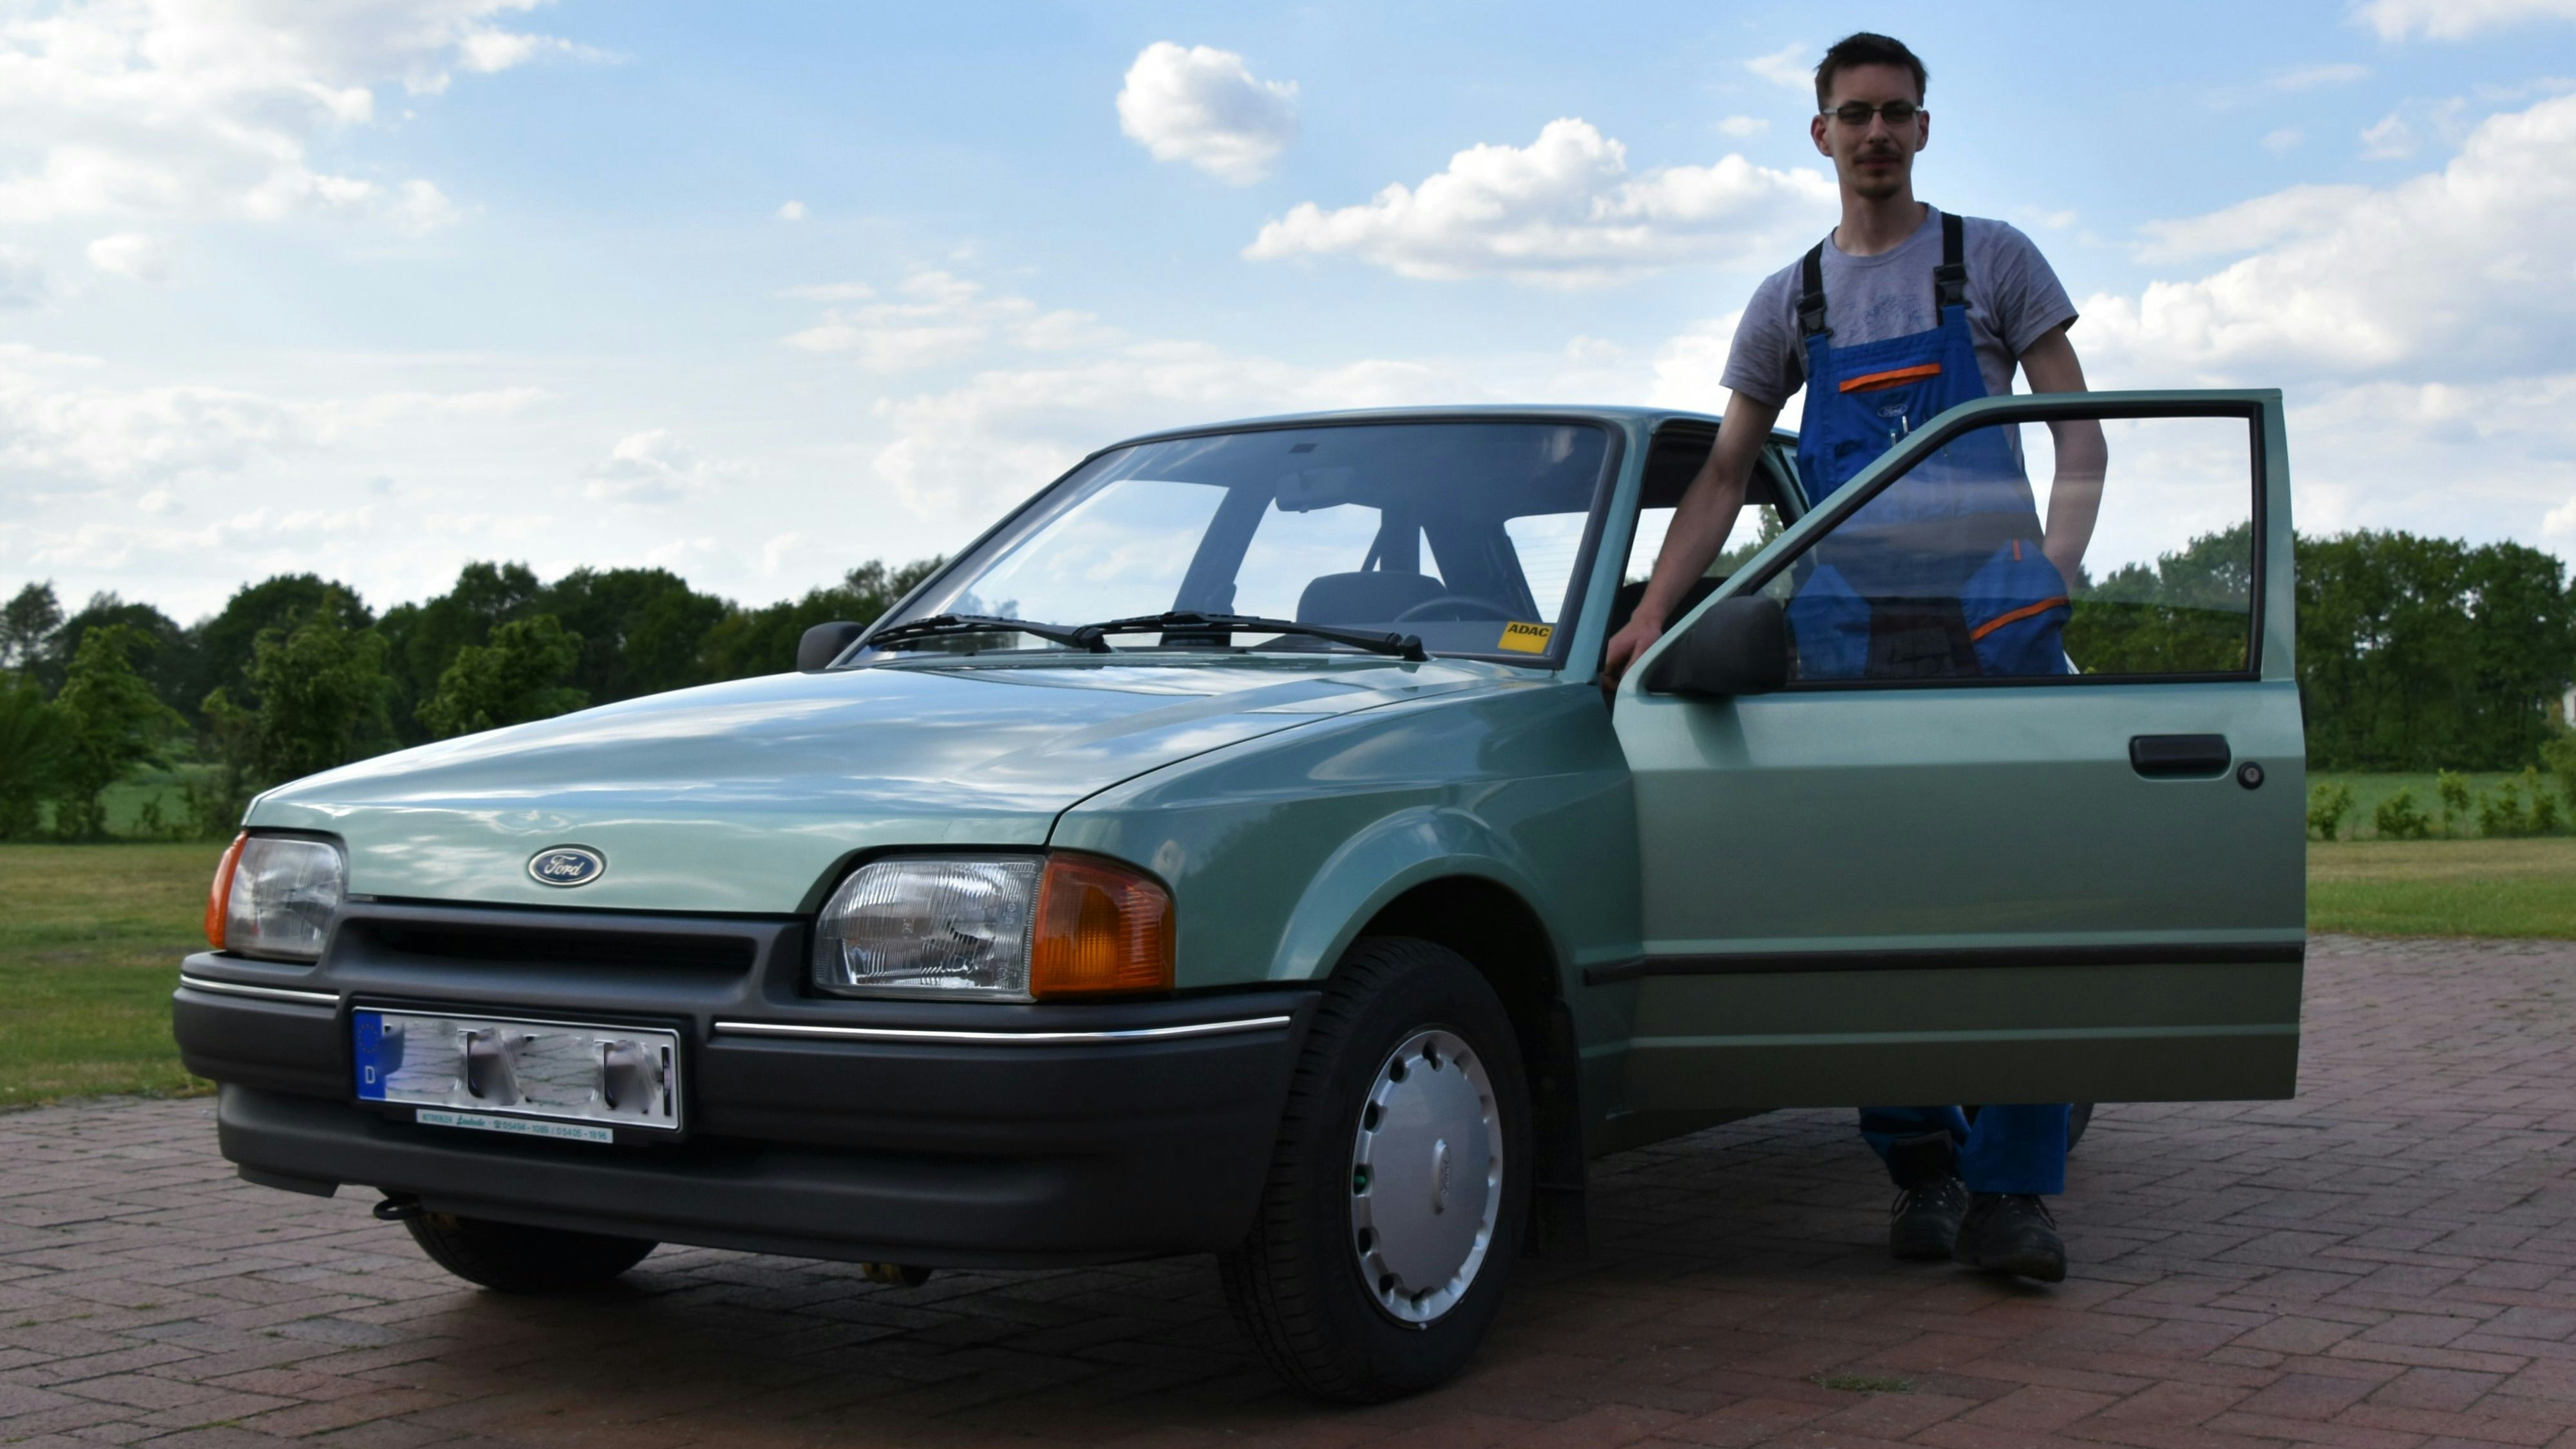 Jung und Alt: Darius Schulz und sein metallic-grüner Ford Escort lassen sich auch am Sonntag bei "Steinfeld Classic" finden. Foto: Hahn